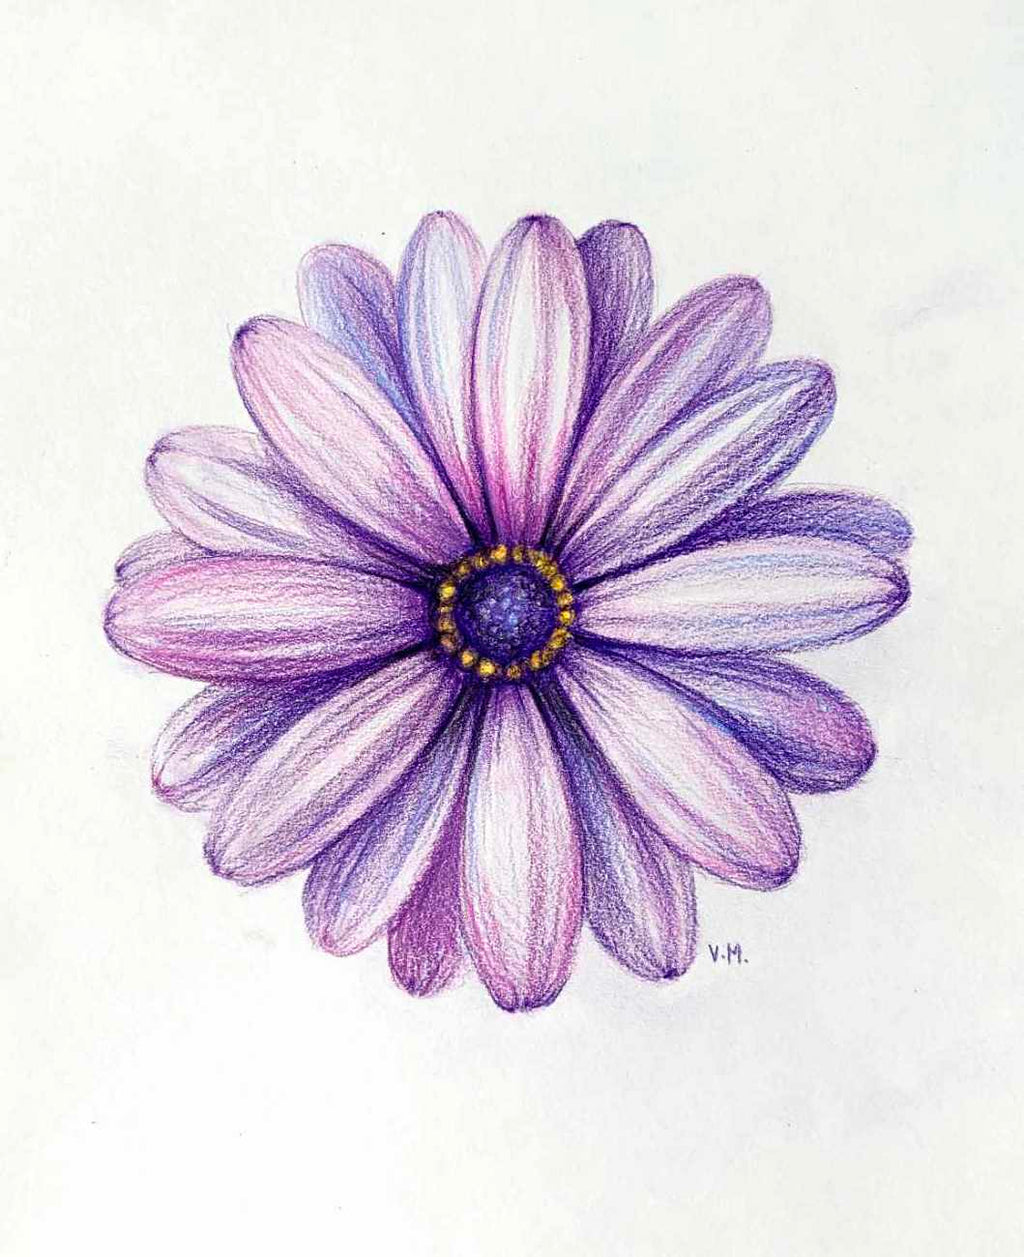 daisy drawing